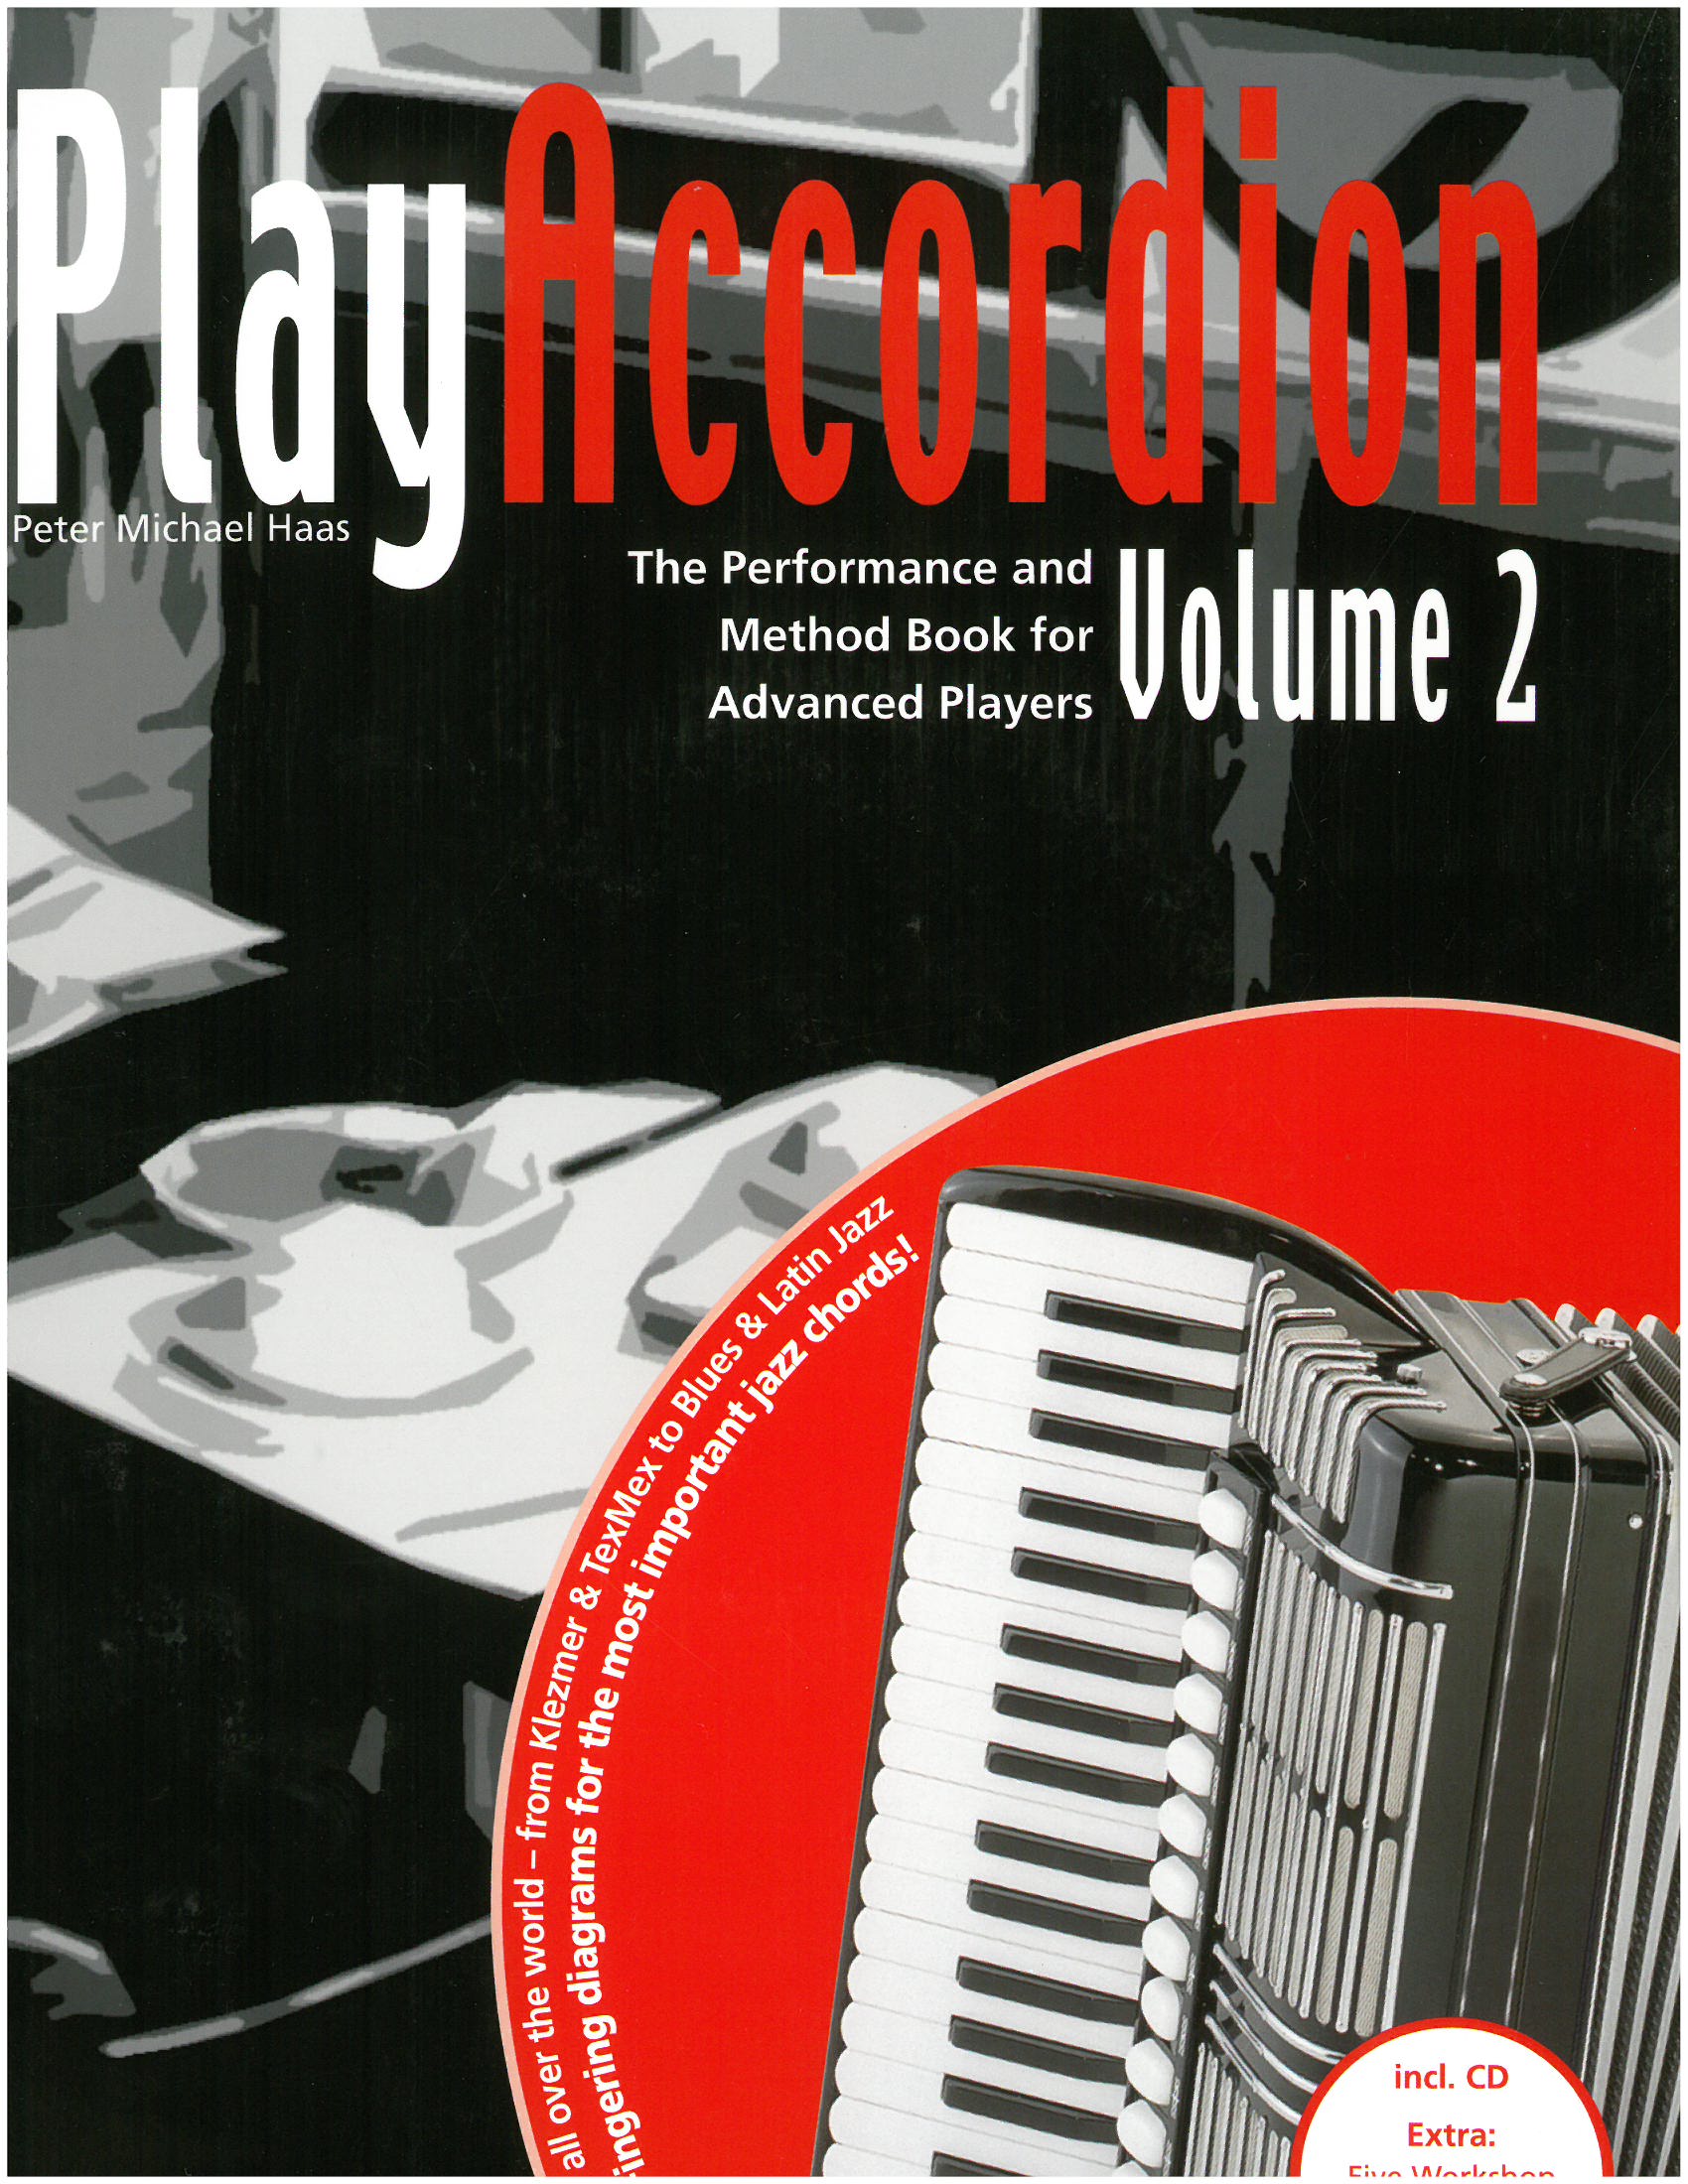 Reproducir Accordion Volume II con CD